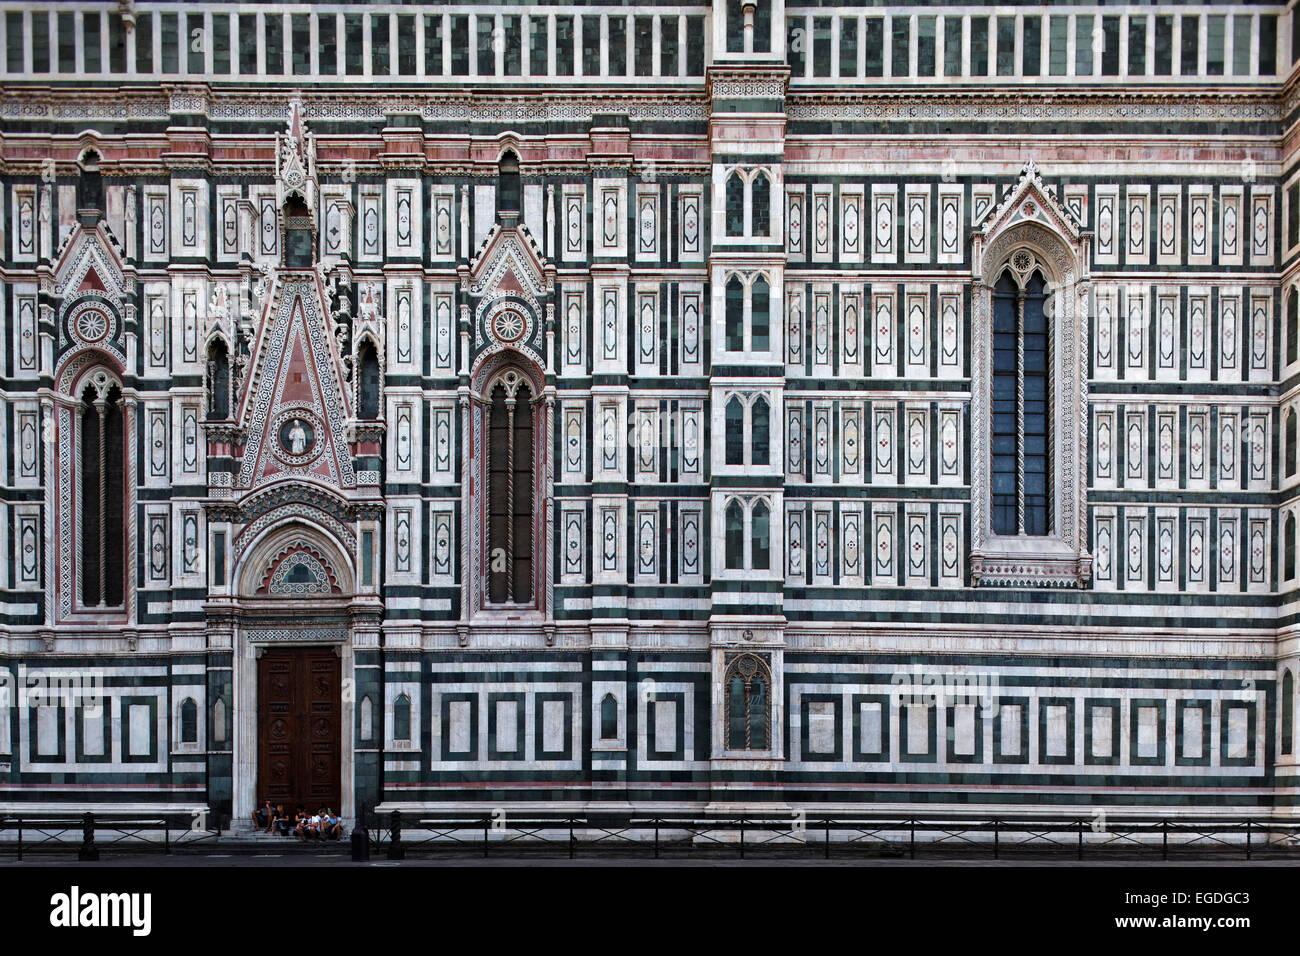 Fachada Lateral de la catedral, Kathedrale Santa Maria del Fiore, Florencia, Toscana, Italia Foto de stock